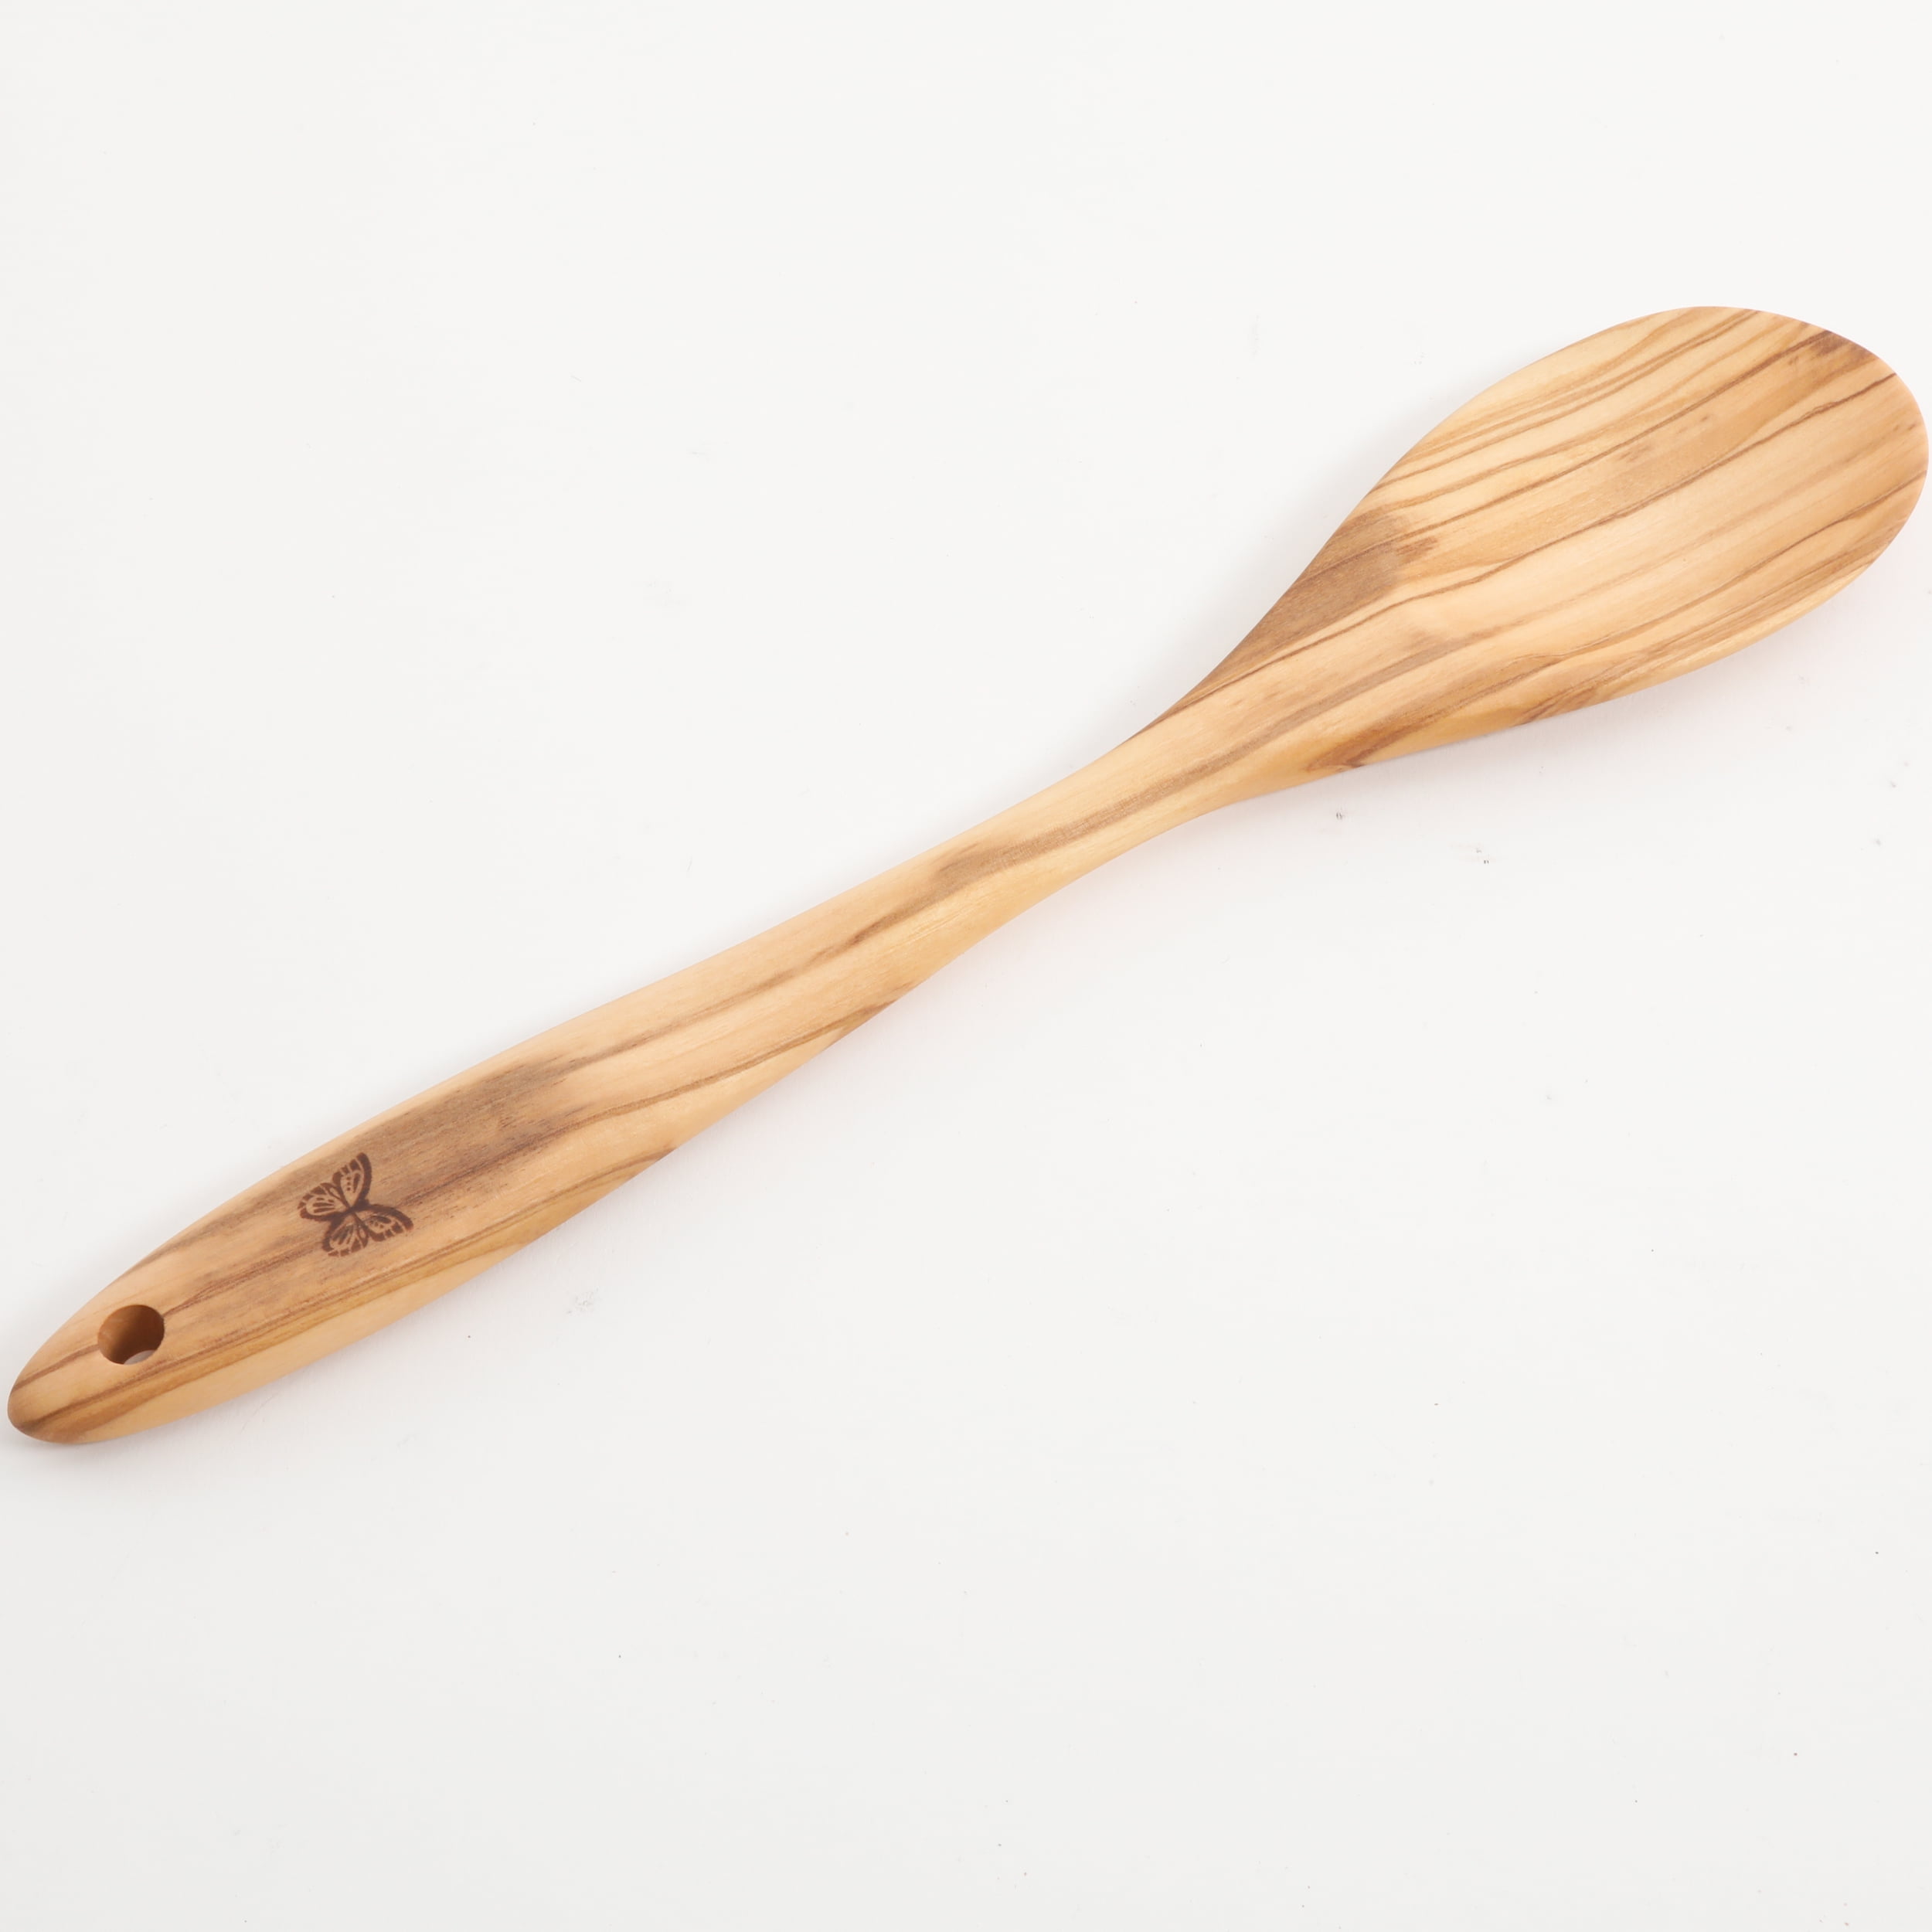 The Pioneer Woman Rustic Olive Wood Spoon